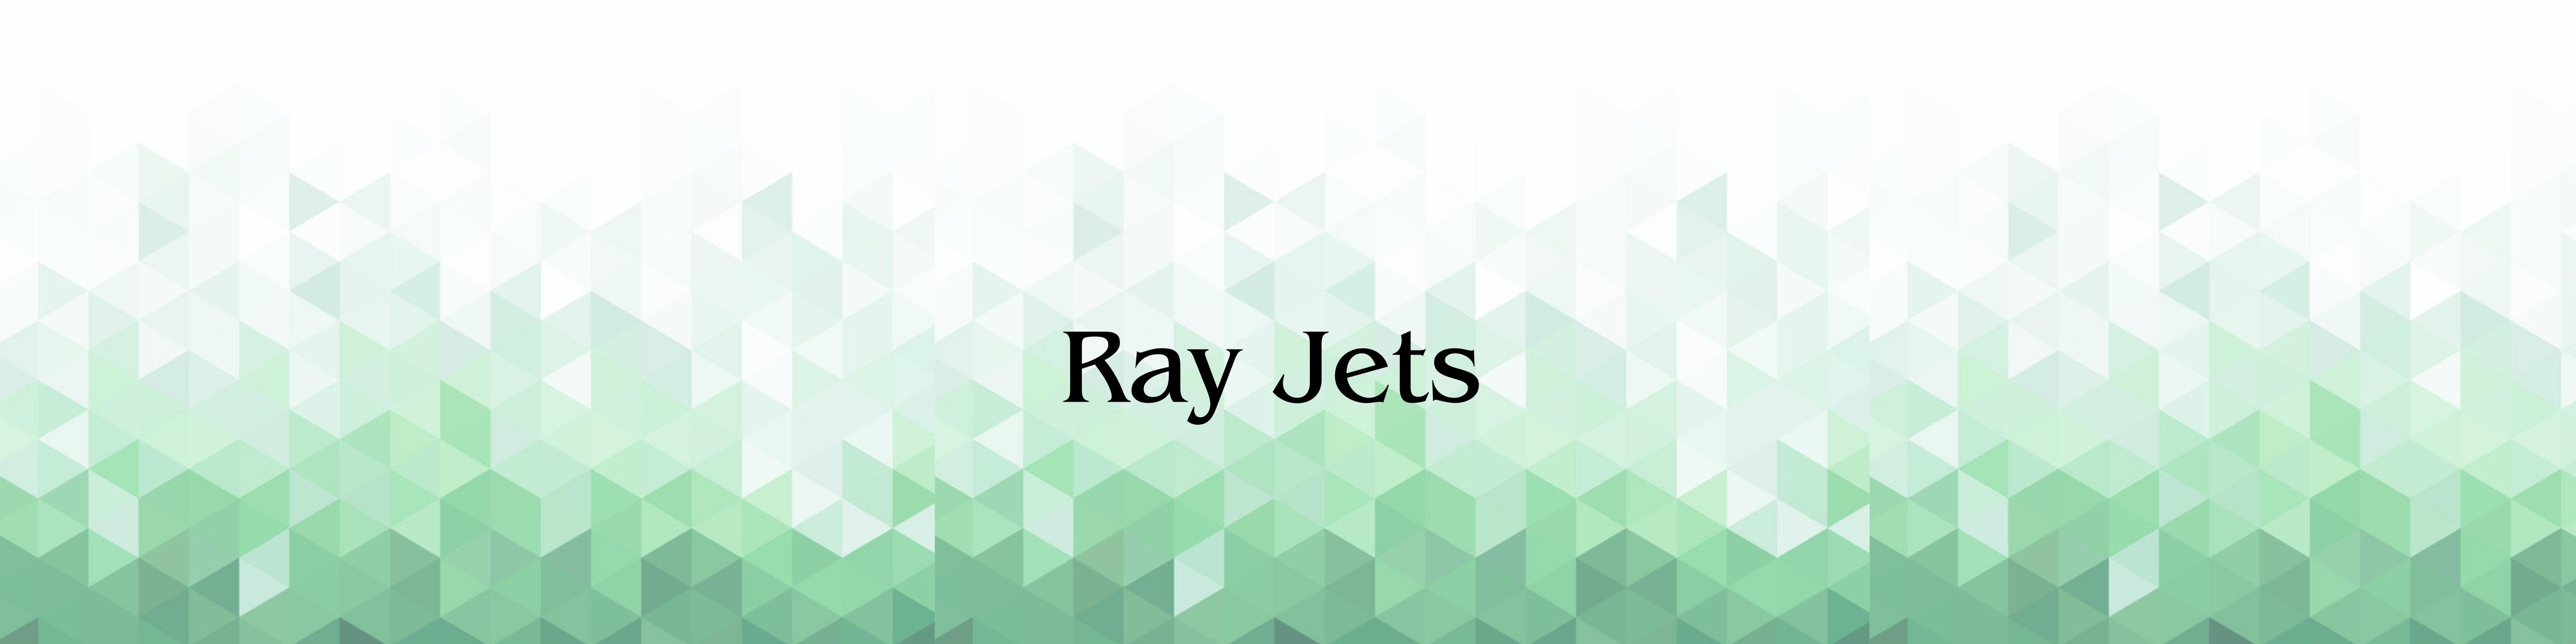 RAY-JET